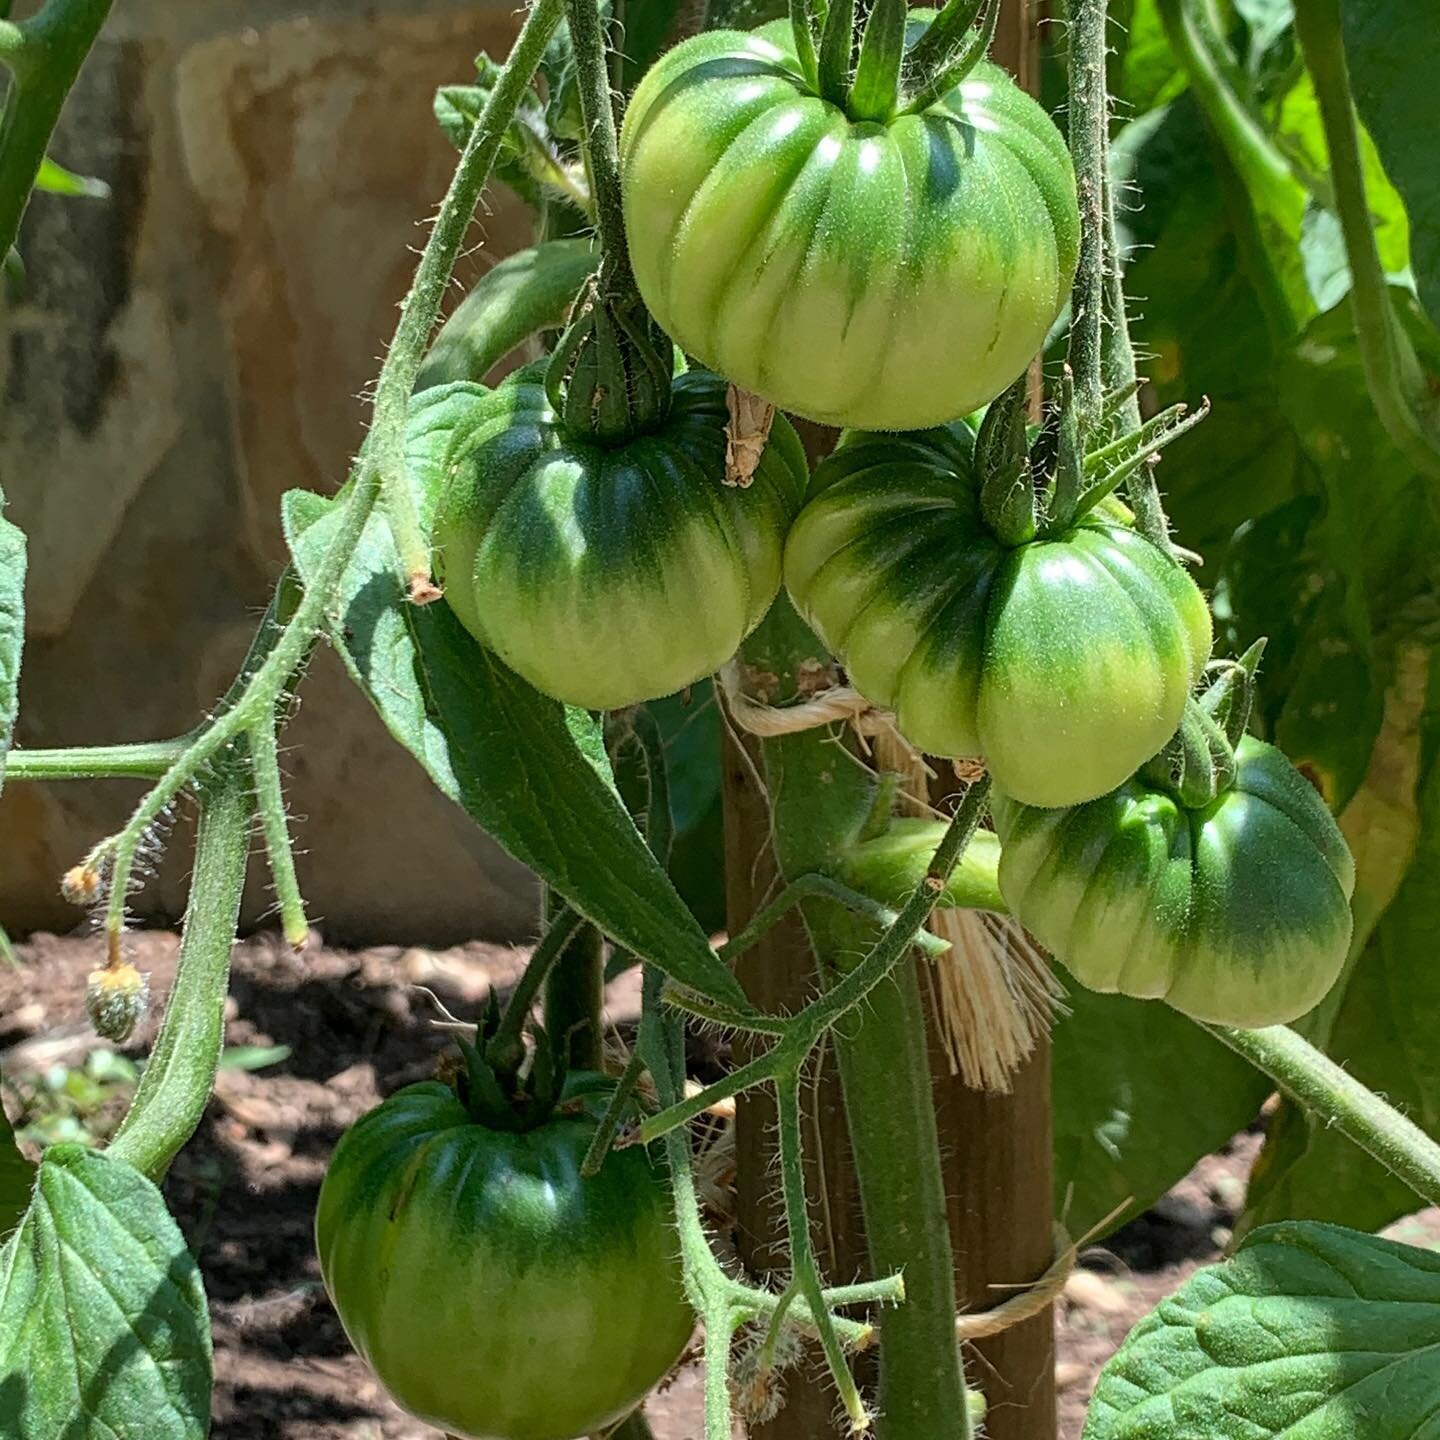 My 2021 tomato garden is looking good! @tomatomania #laurelgarza #heirloomtomatoes #losangeles #vegetablegarden